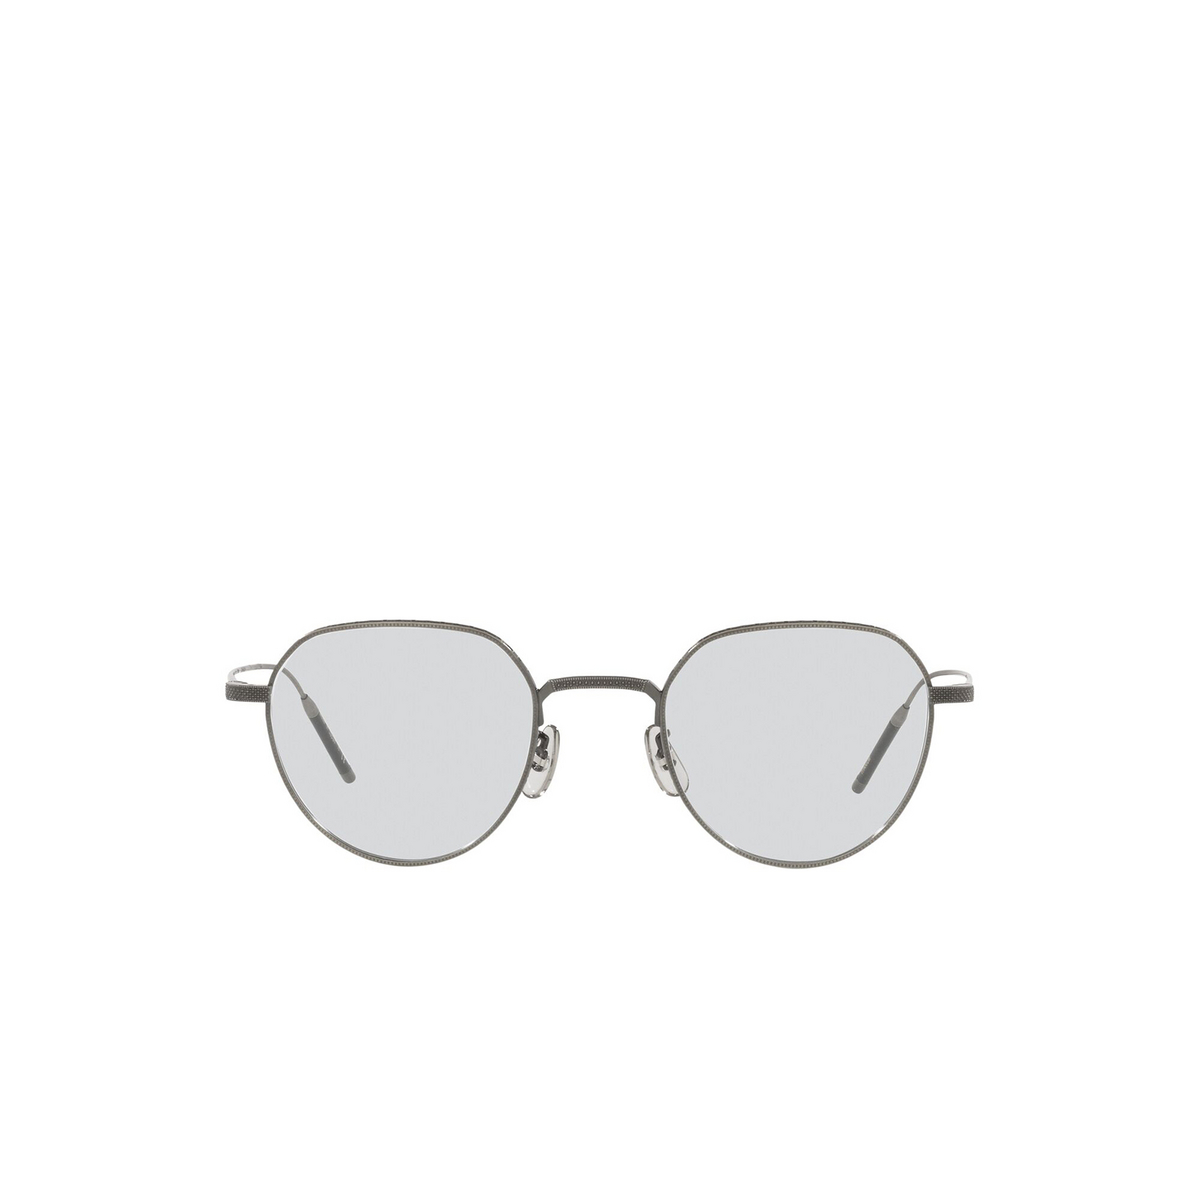 Oliver Peoples® Round Eyeglasses: Tk-2 OV1275T color Pewter 5076 - 1/3.